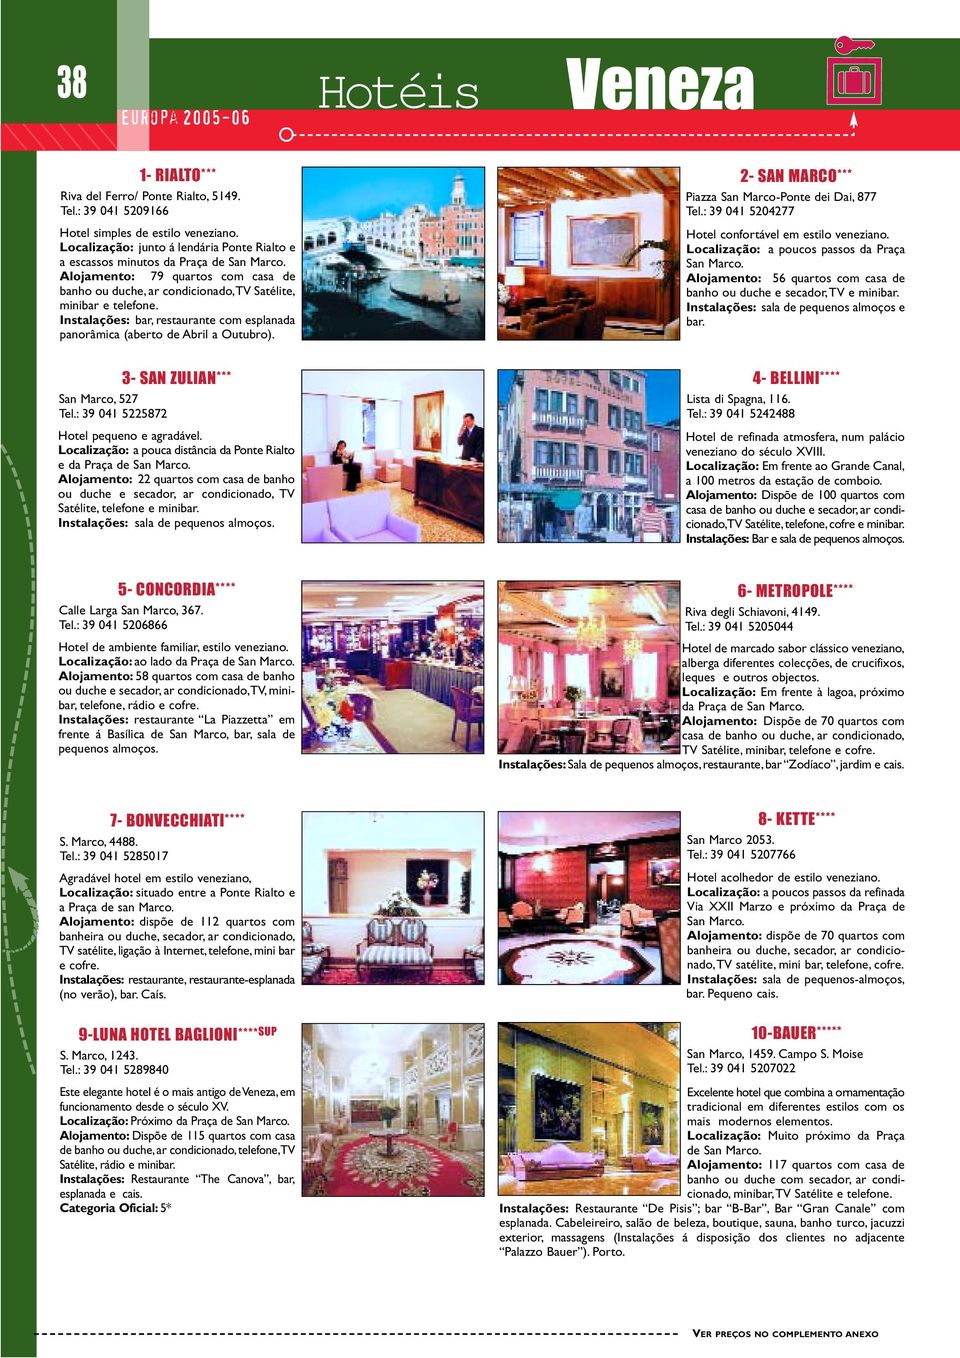 Instalações: bar, restaurante com esplanada panorâmica (aberto de Abril a Outubro). 2- SAN MARCO*** Piazza San Marco-Ponte dei Dai, 877 Tel.: 39 041 5204277 Hotel confortável em estilo veneziano.